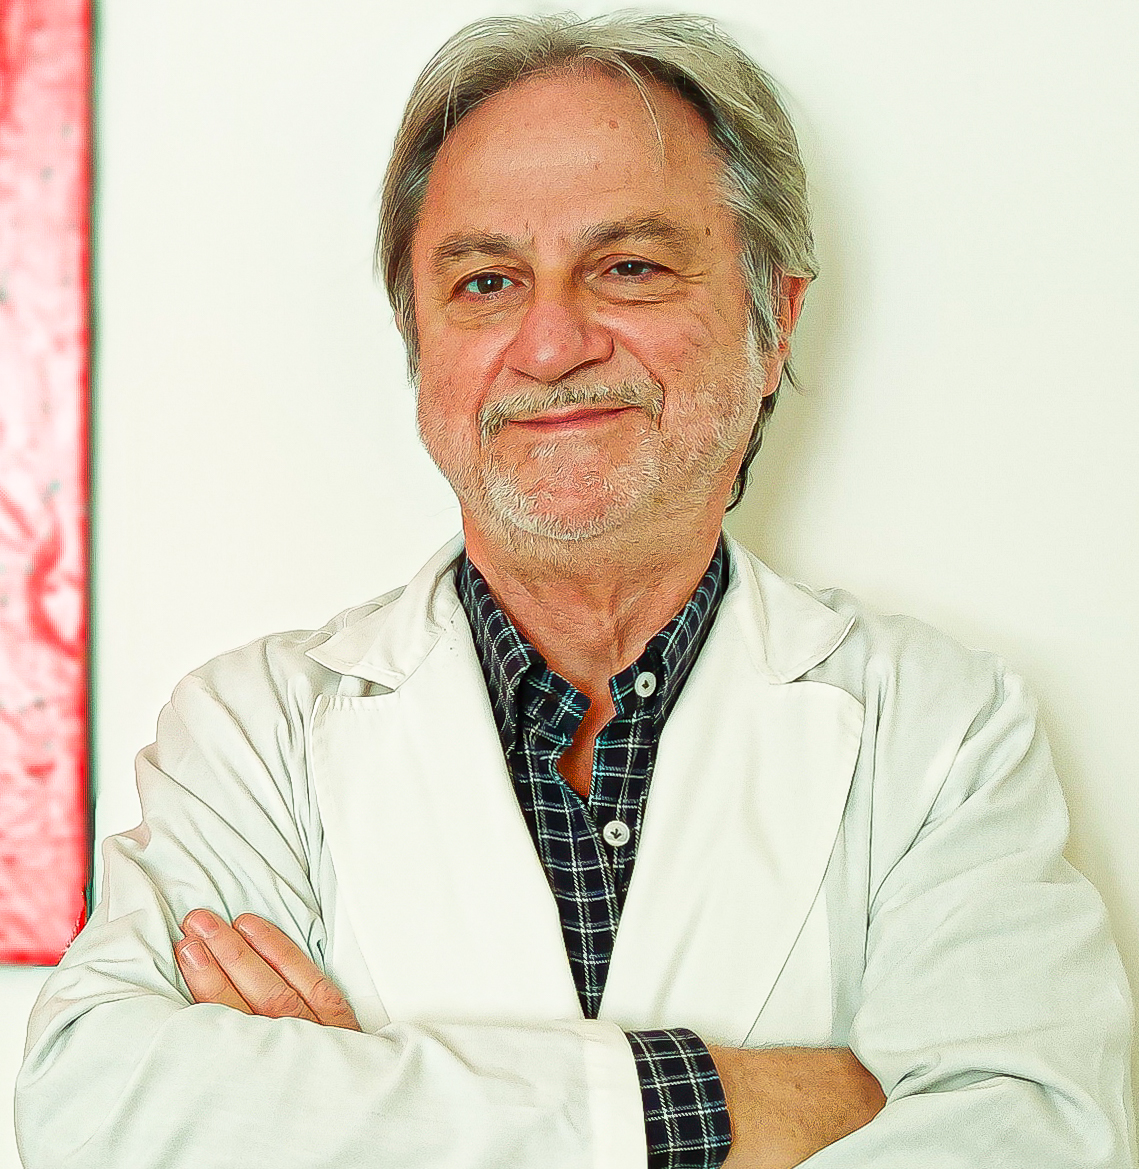 Il Dott. Picariello è il professionista che collabora con Studio Vircos per l' ossigeno ozono terapia a Roma.